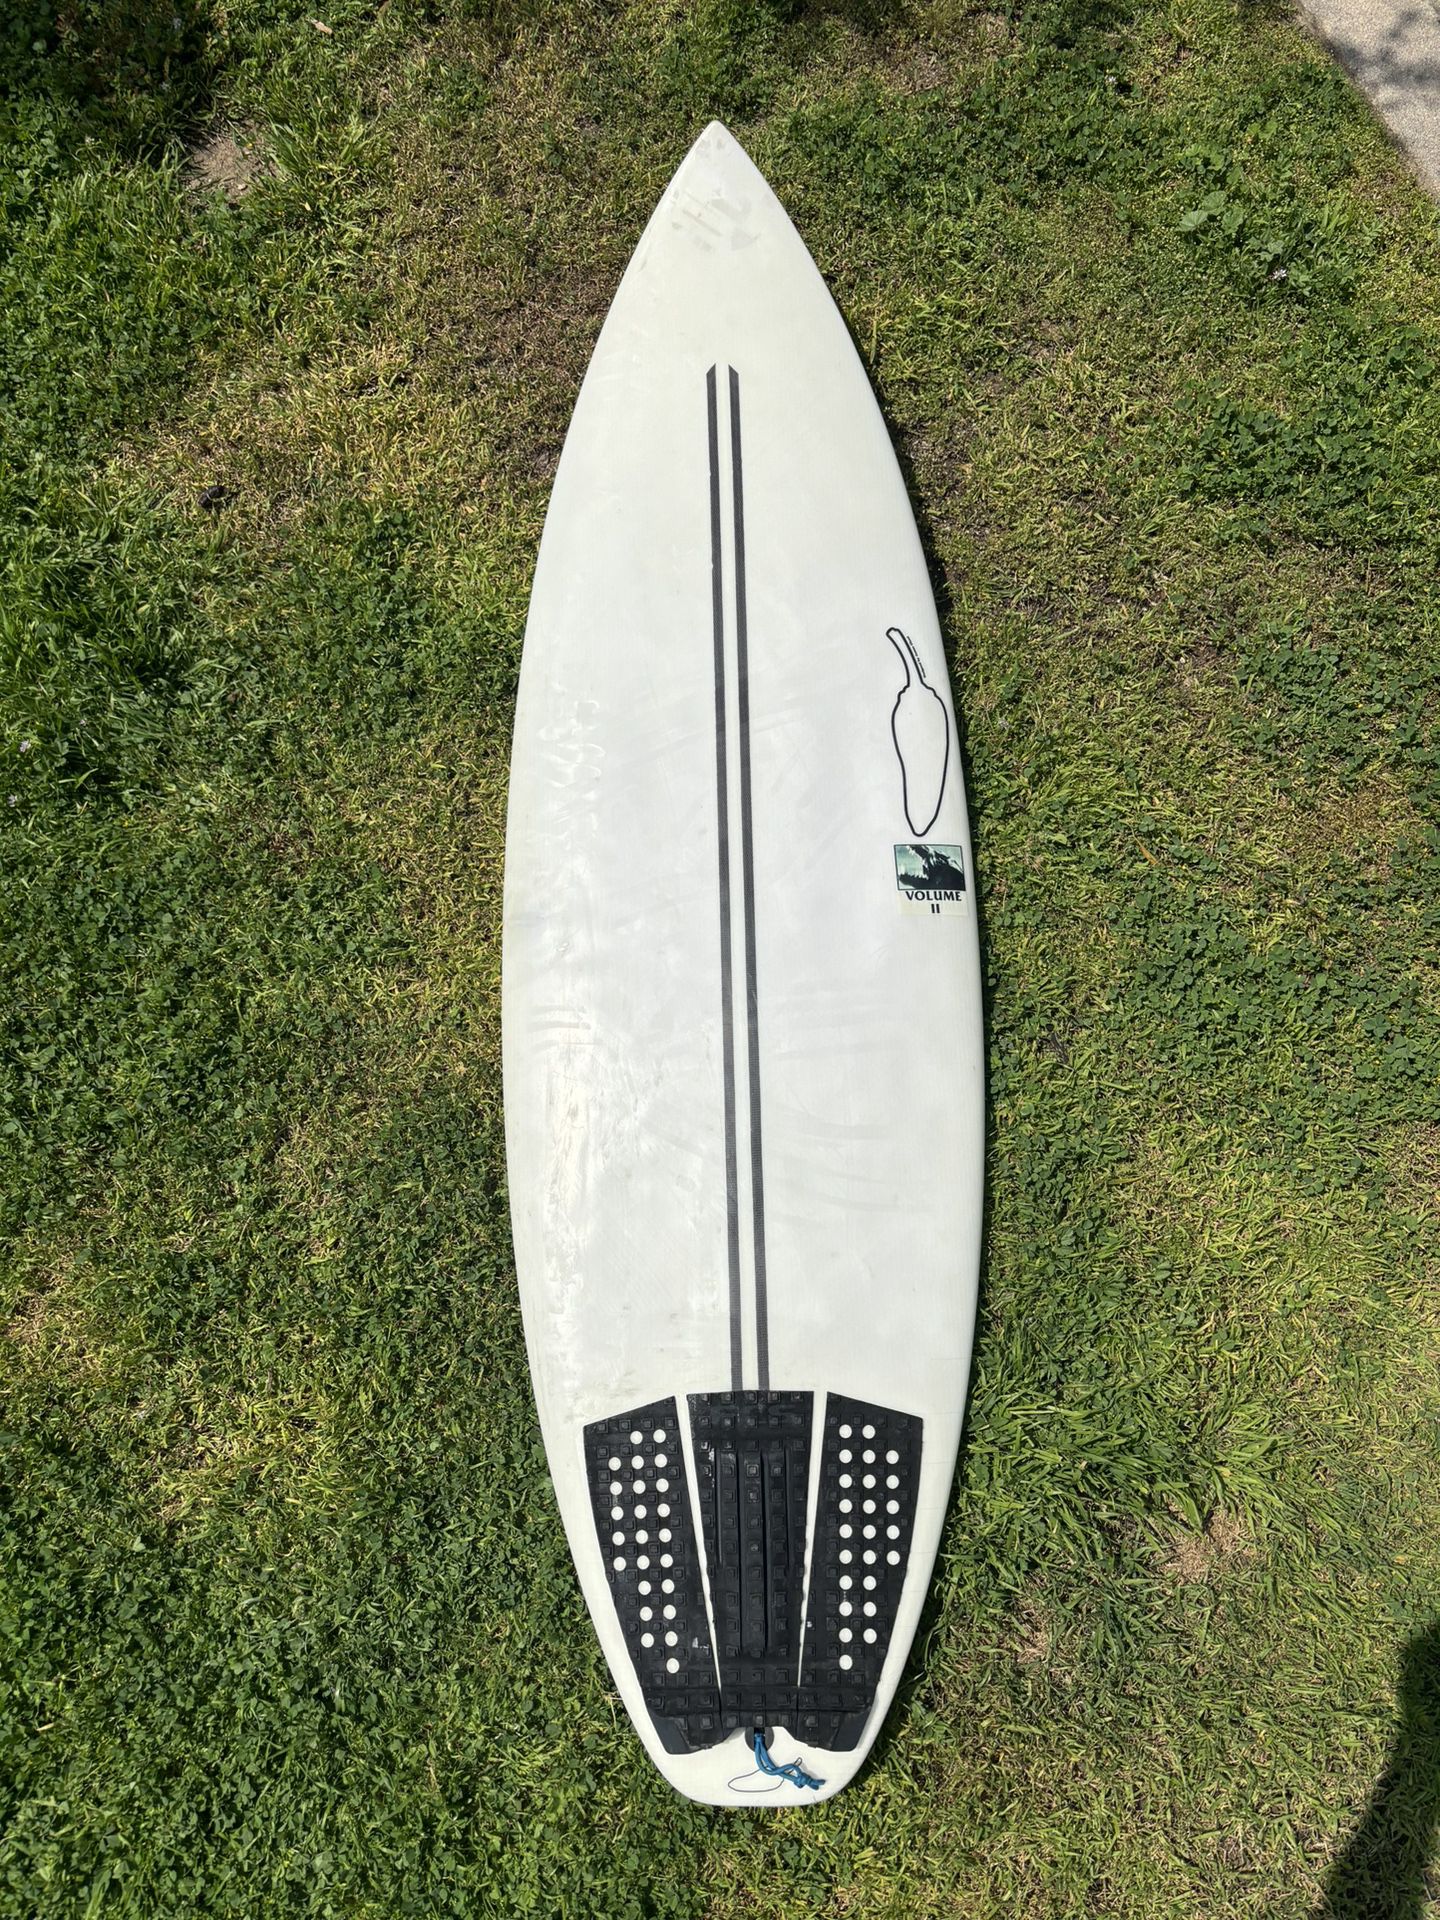 Chili - Volume II Surfboard